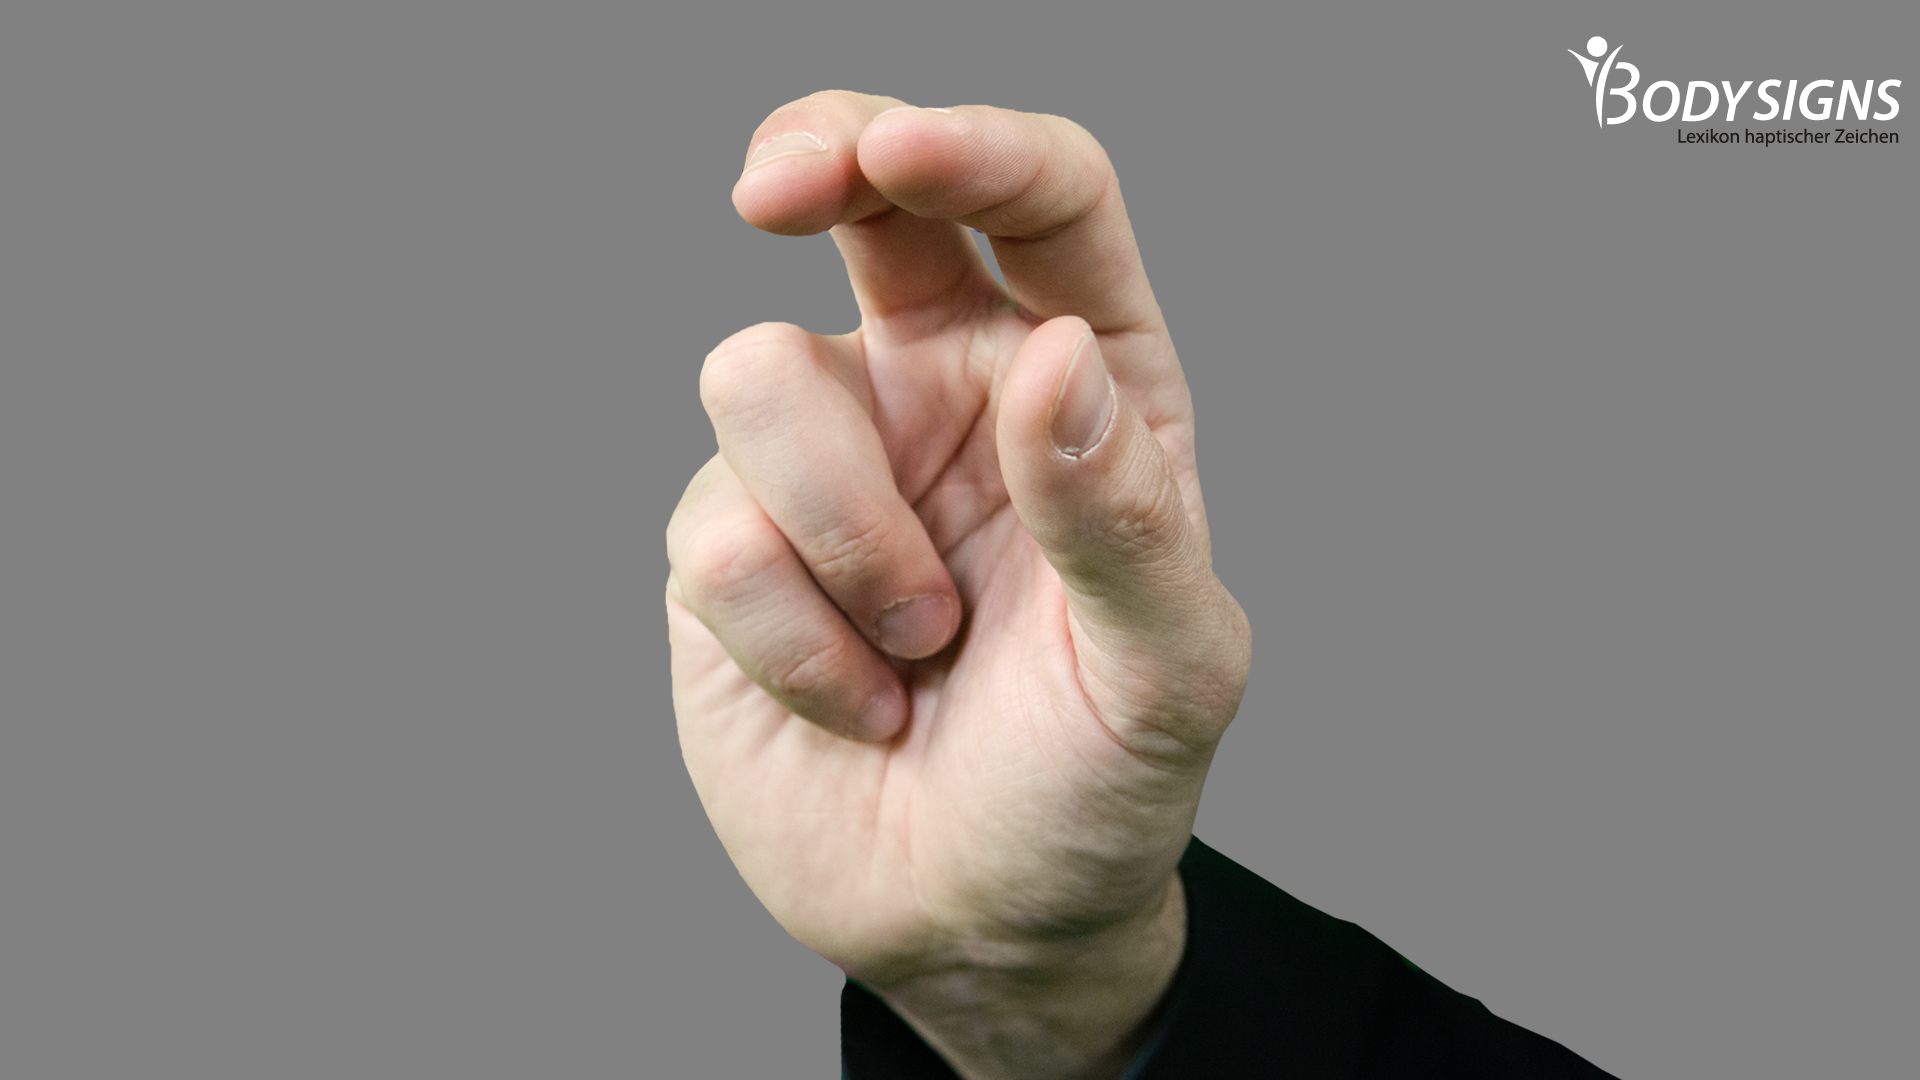 Zeige- und Mittelfinger formen mit Daumen eine lockere Greifhand, kleiner Finger und Rinfinger liegen an.